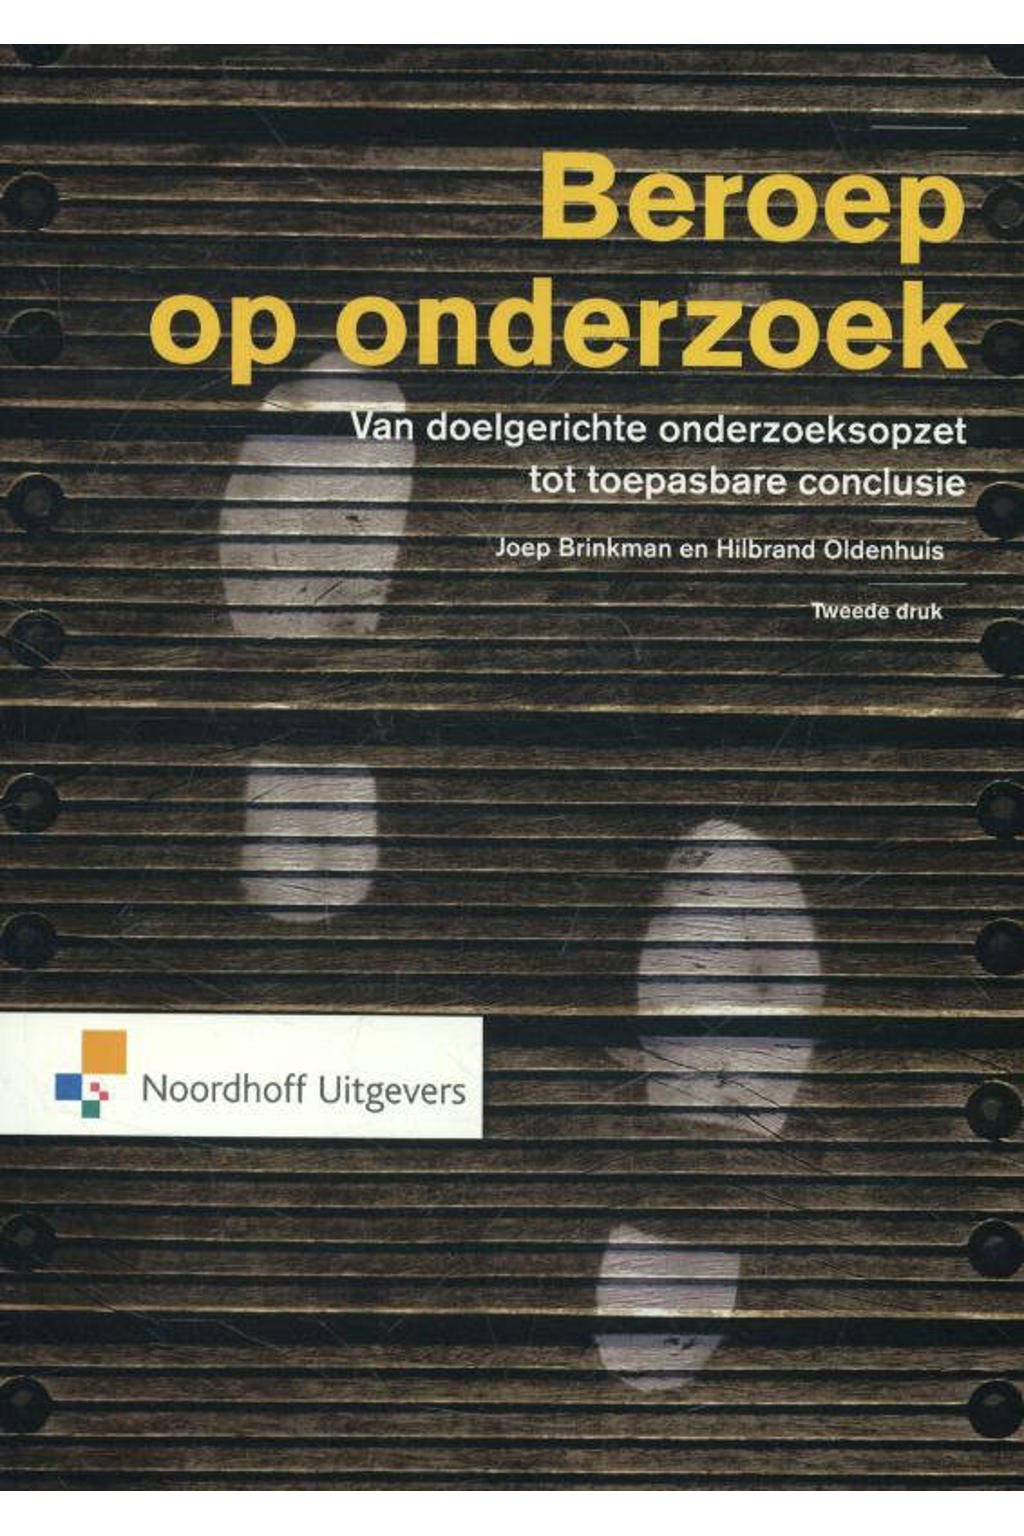 Beroep op onderzoek - Joep Brinkman en Hilbrand Oldenhuis